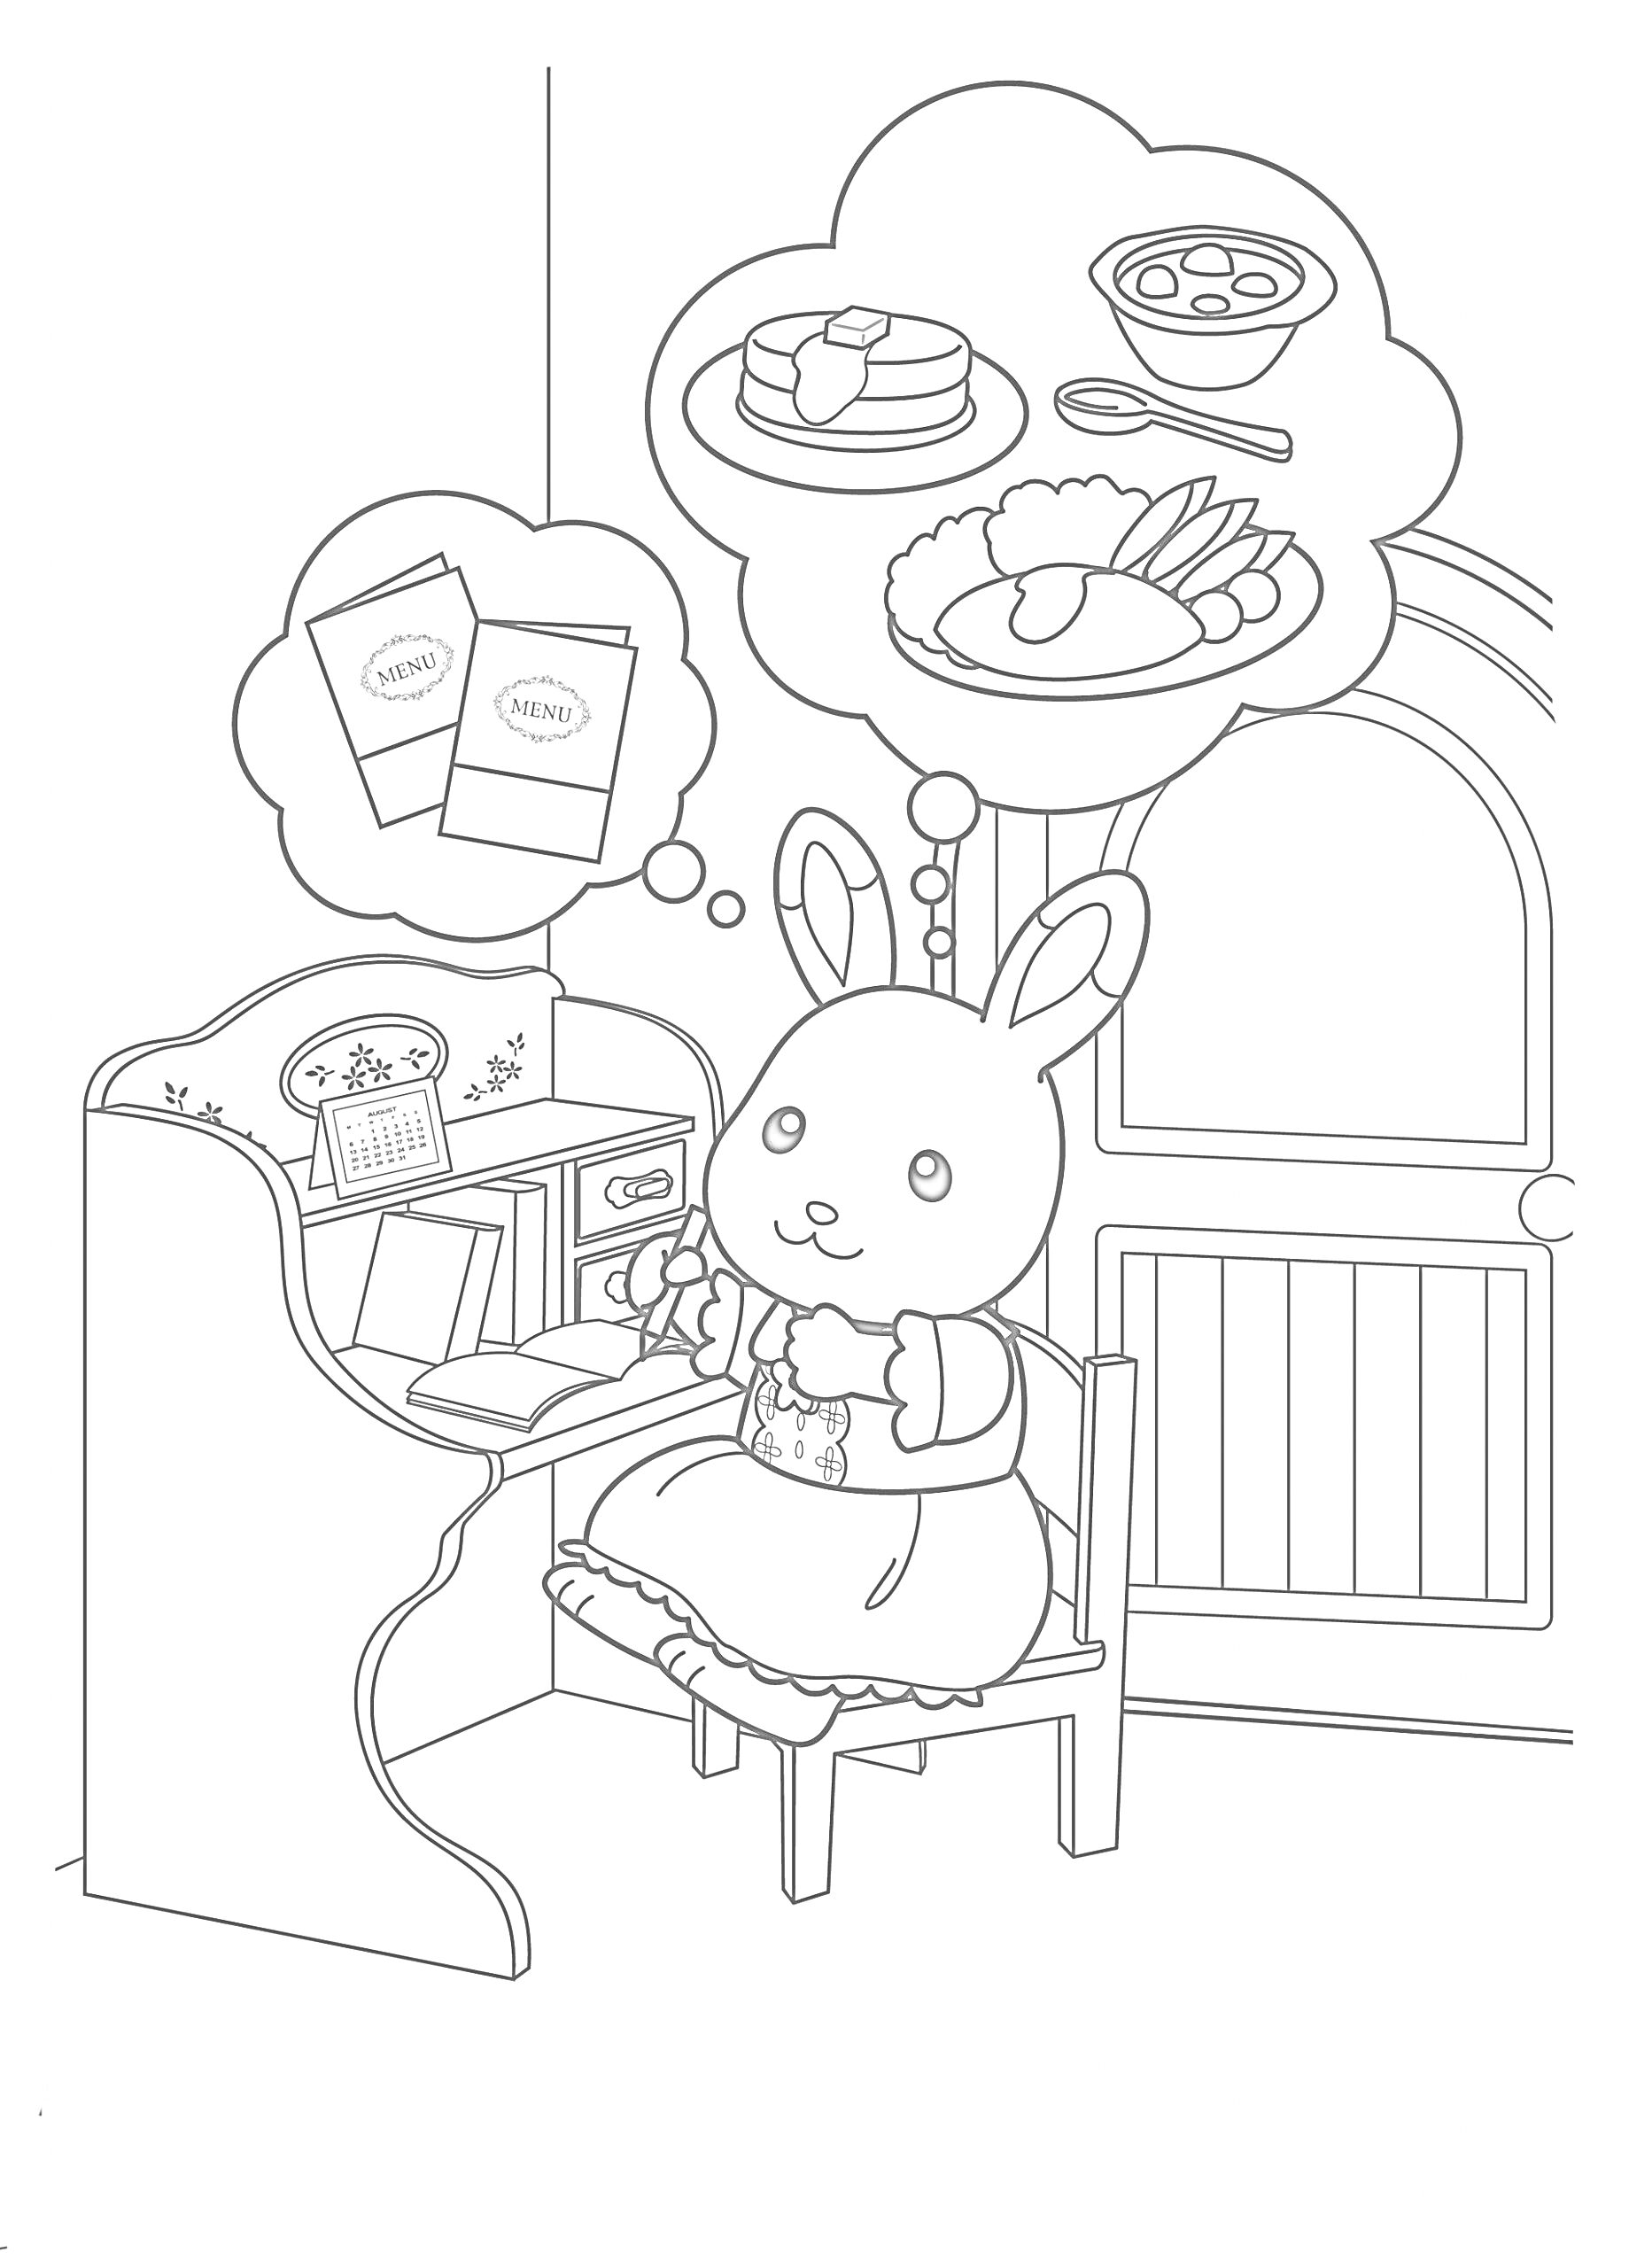 Раскраска Кролик на кухне с мечтами о еде и рецептах